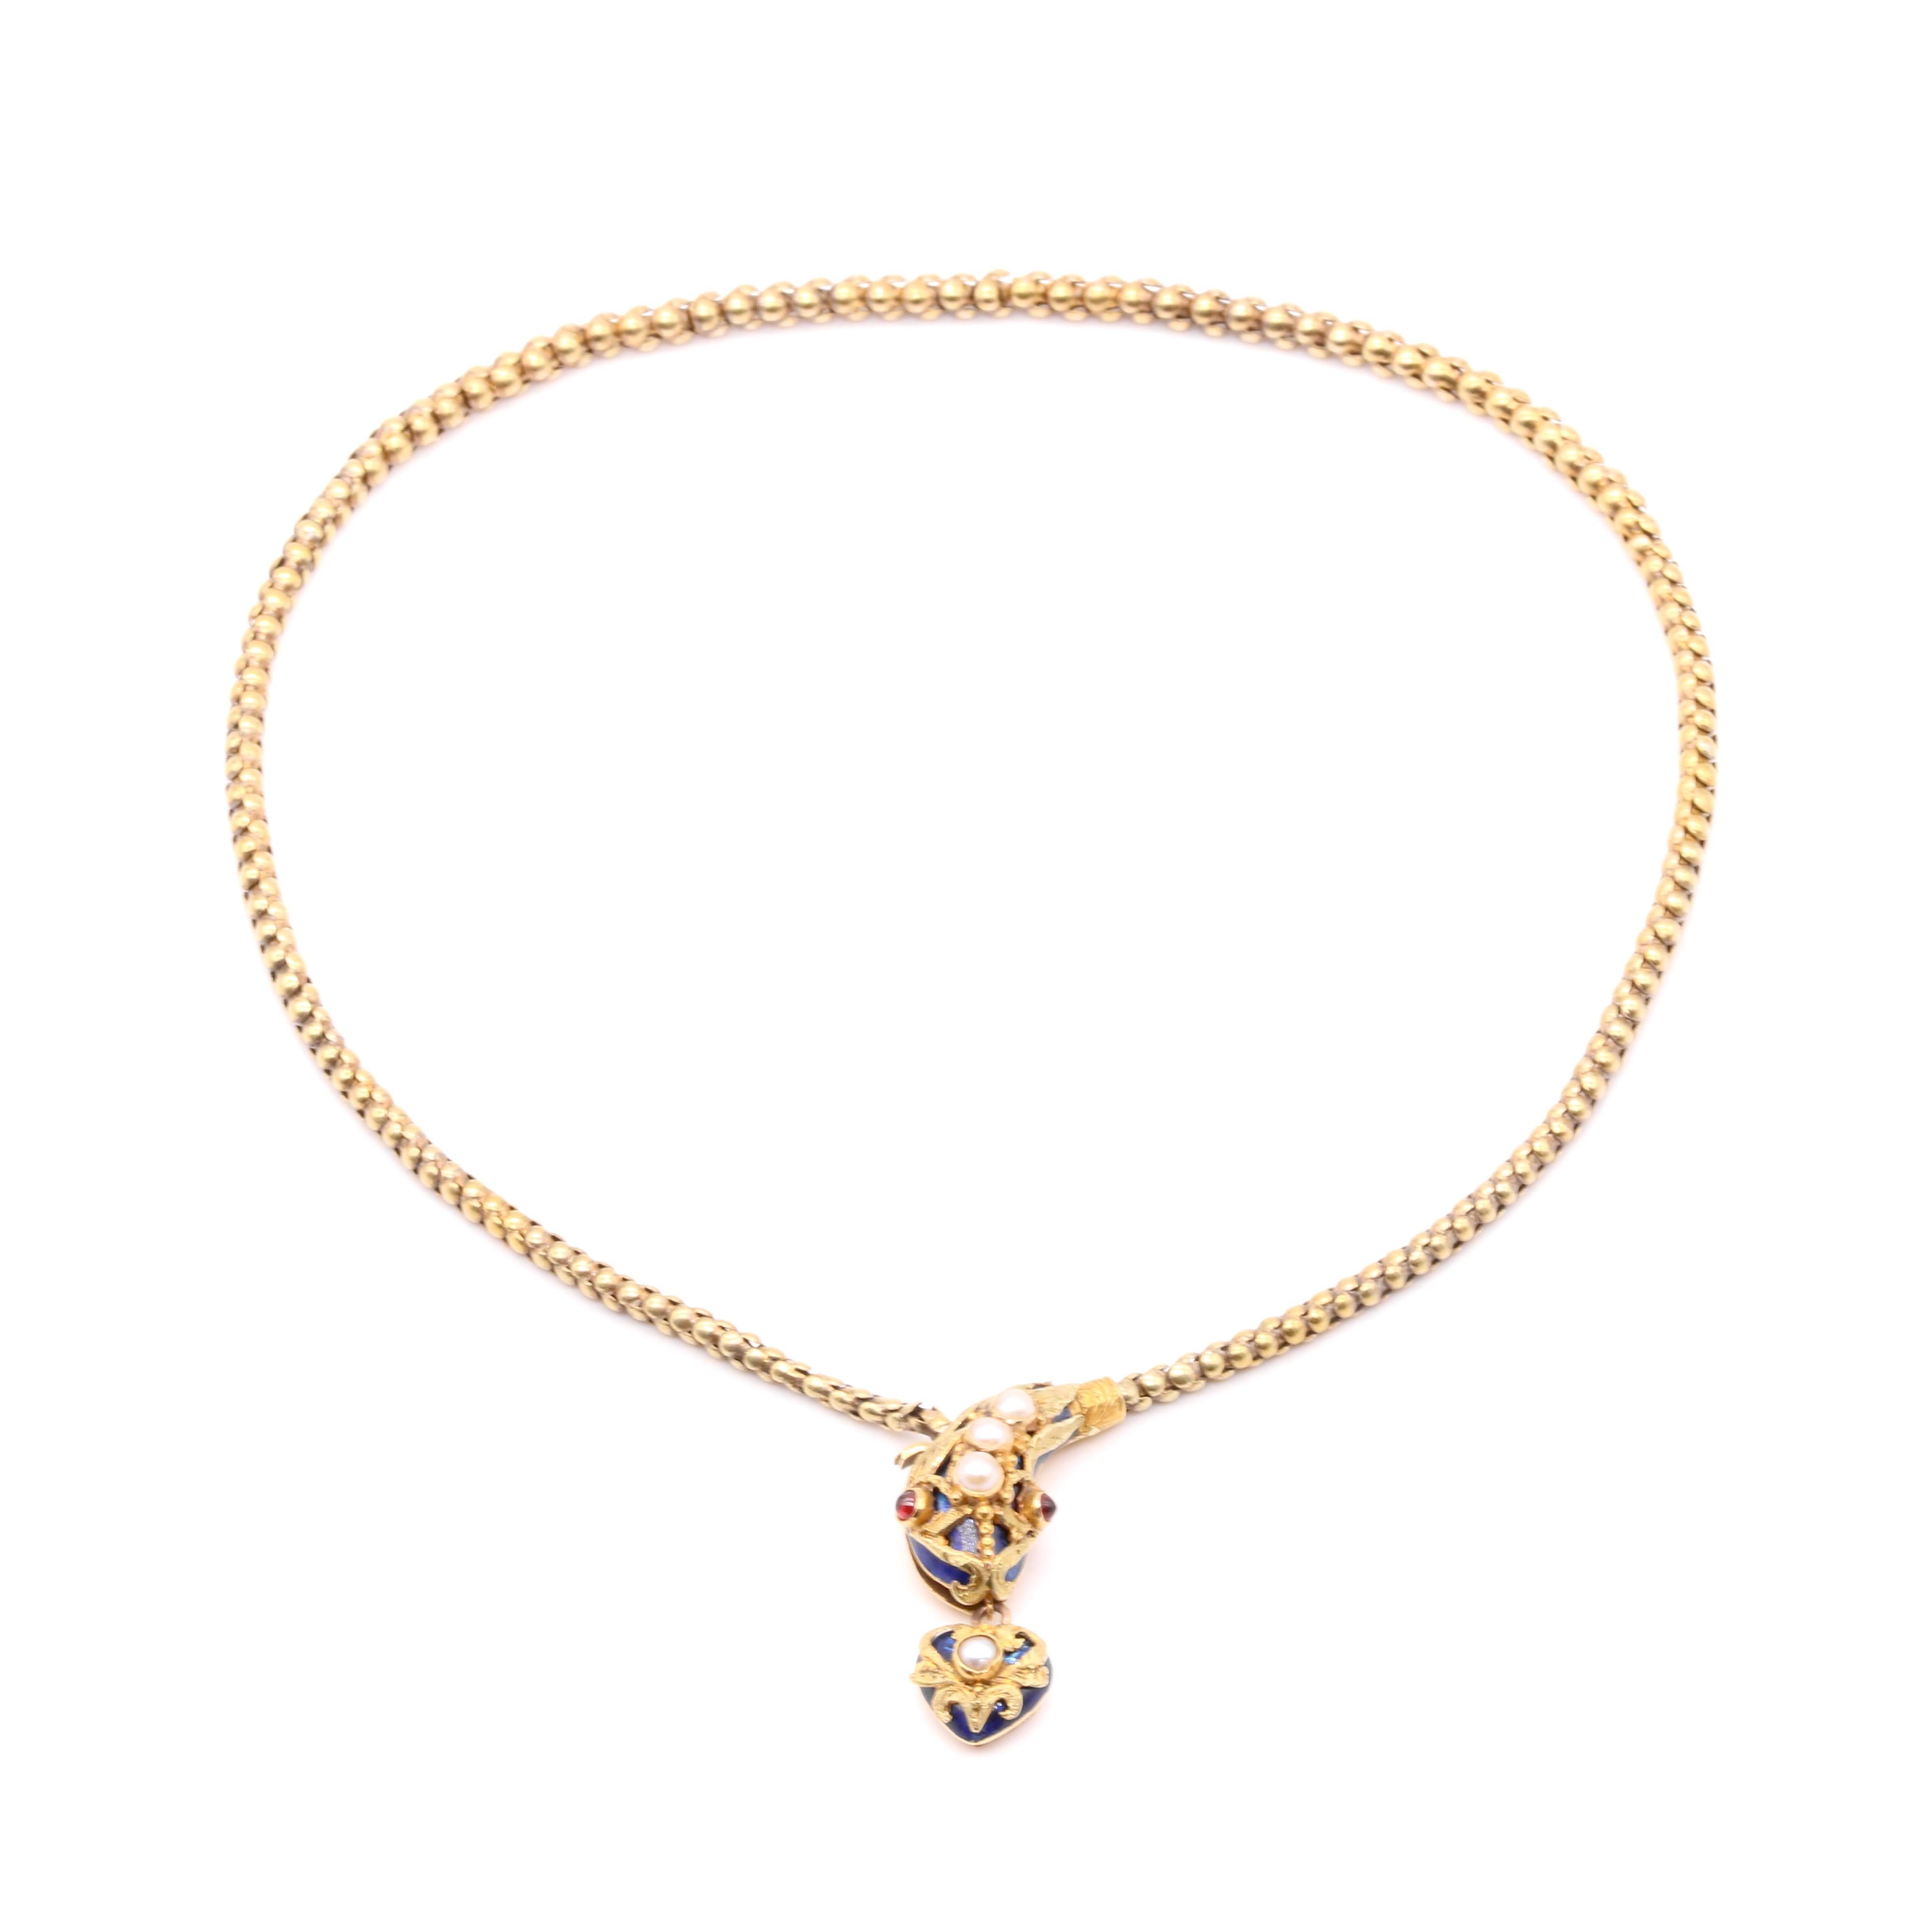 Antique Victorian 1850s 18K Gold Blue Enamel Pearl & Garnet Snake Necklace For Sale 3